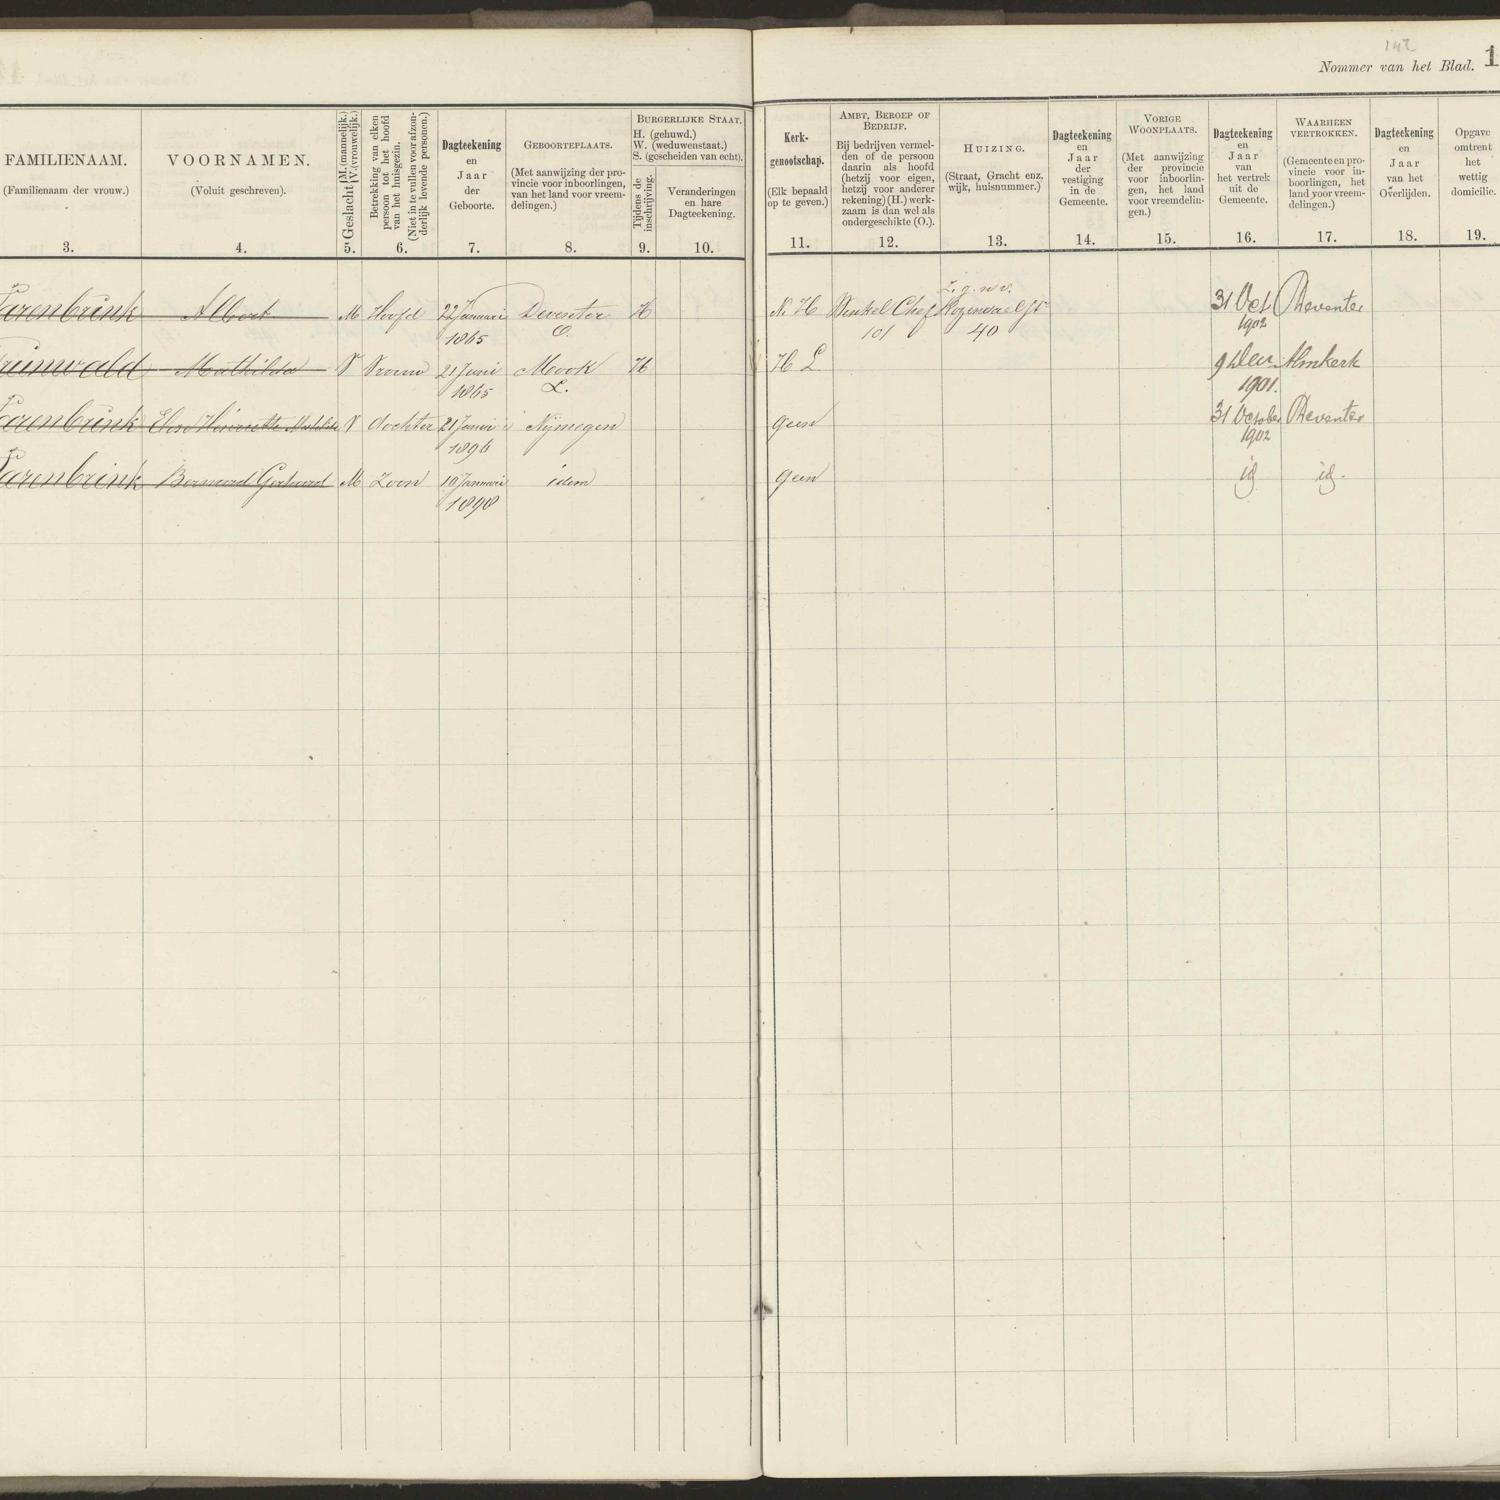 Population registry, Nijmegen, 1900-1910, wijk C, part 10, sheet 148